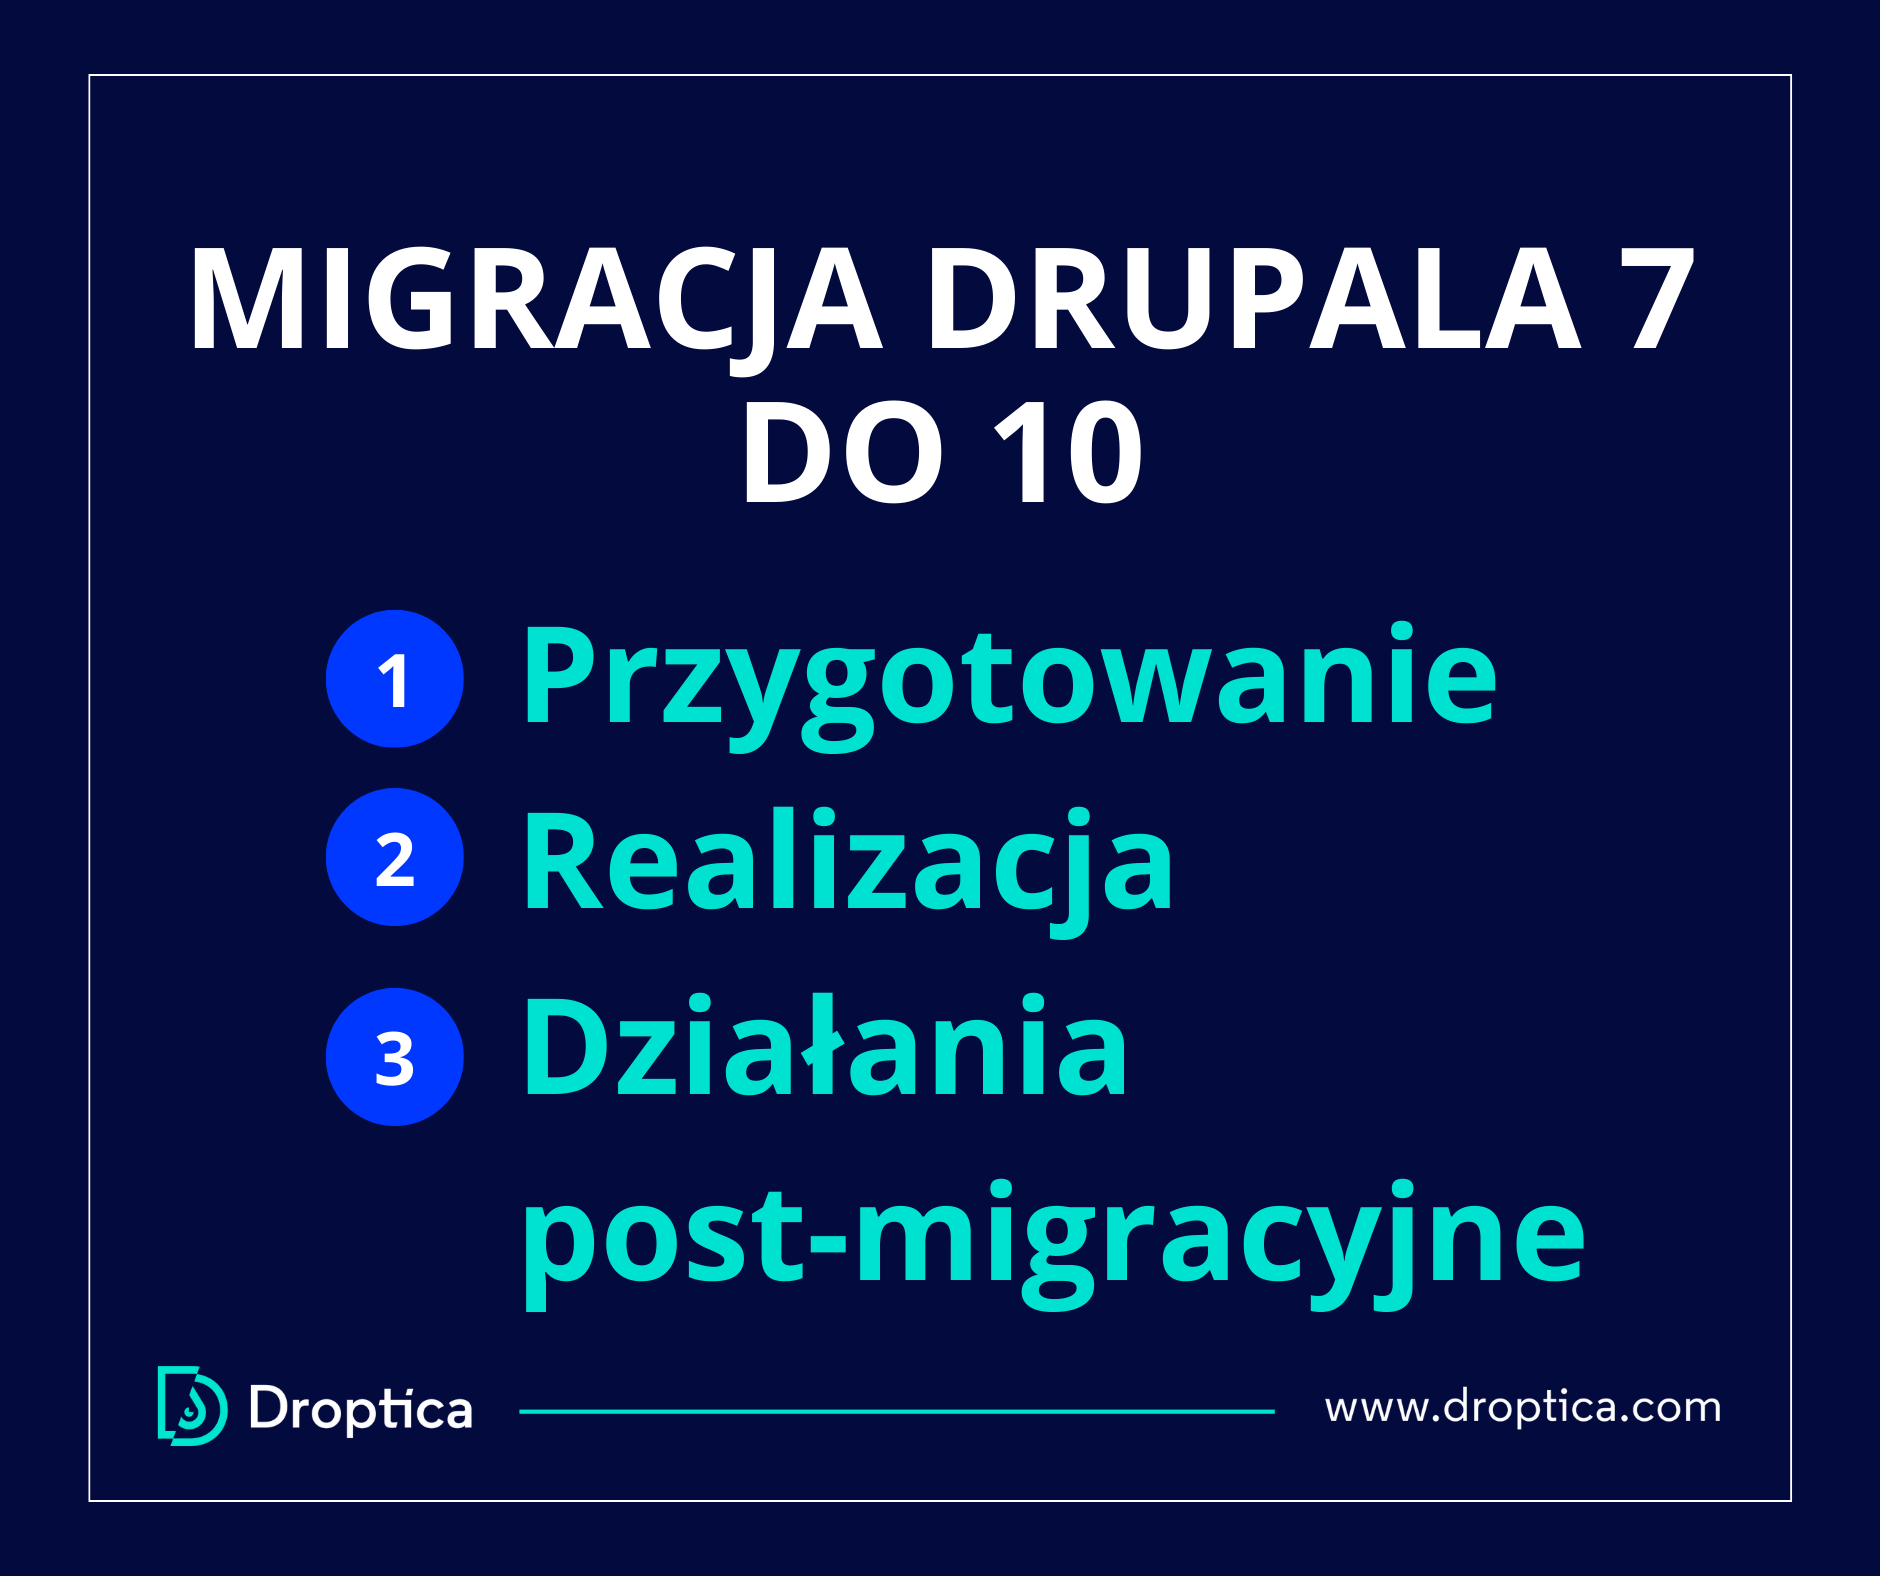 Migracja Drupala 7 do 10 składa się z działań przygotowawczych, wdrożeniowych i pomigracyjnych.